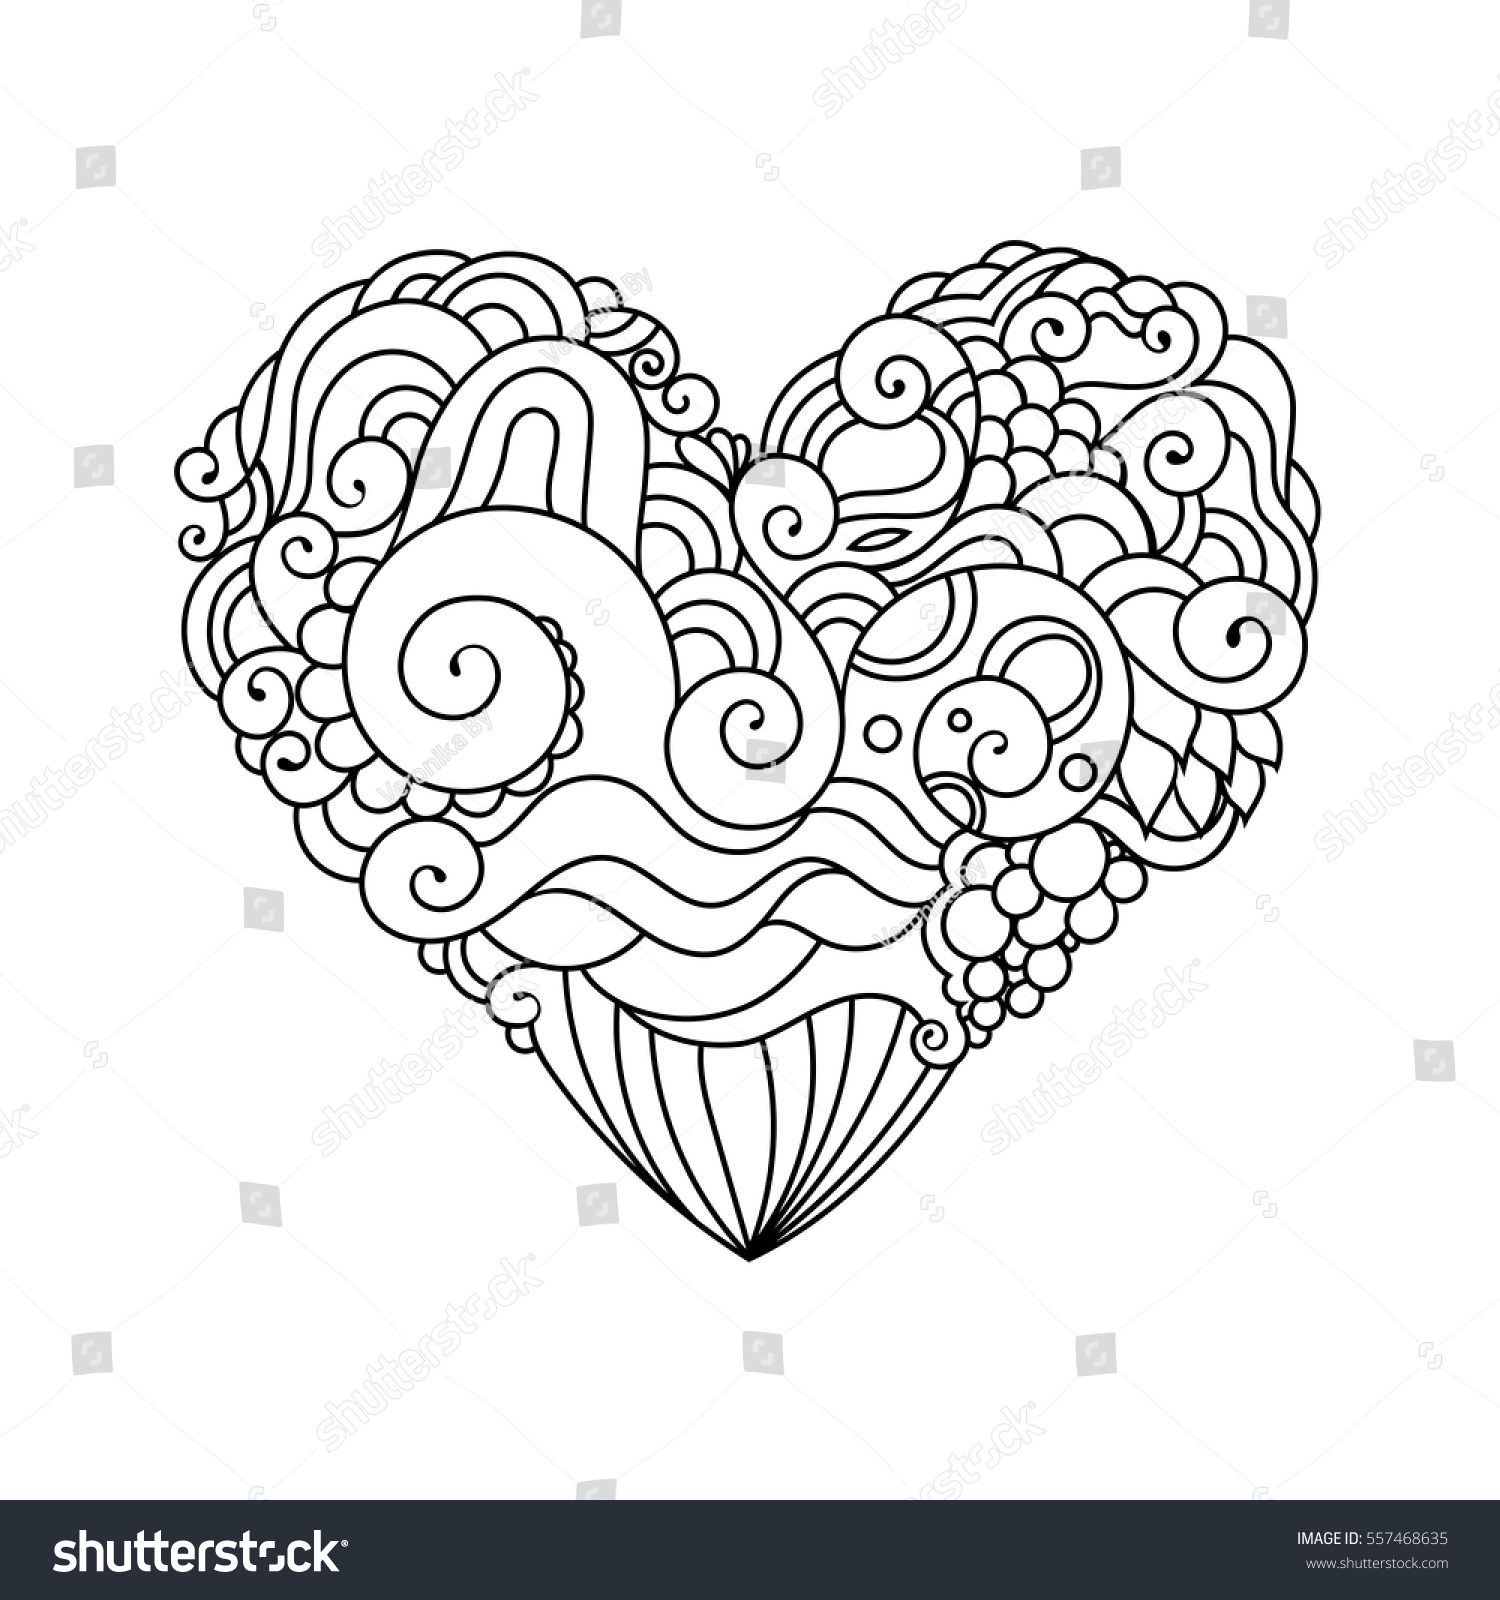 白黒のゼンタングル落書きのハートスケッチと観賞用バレンタインのグリーティングカード 白い背景に部族の波状のベクターハートイラスト のベクター画像素材 ロイヤリティフリー